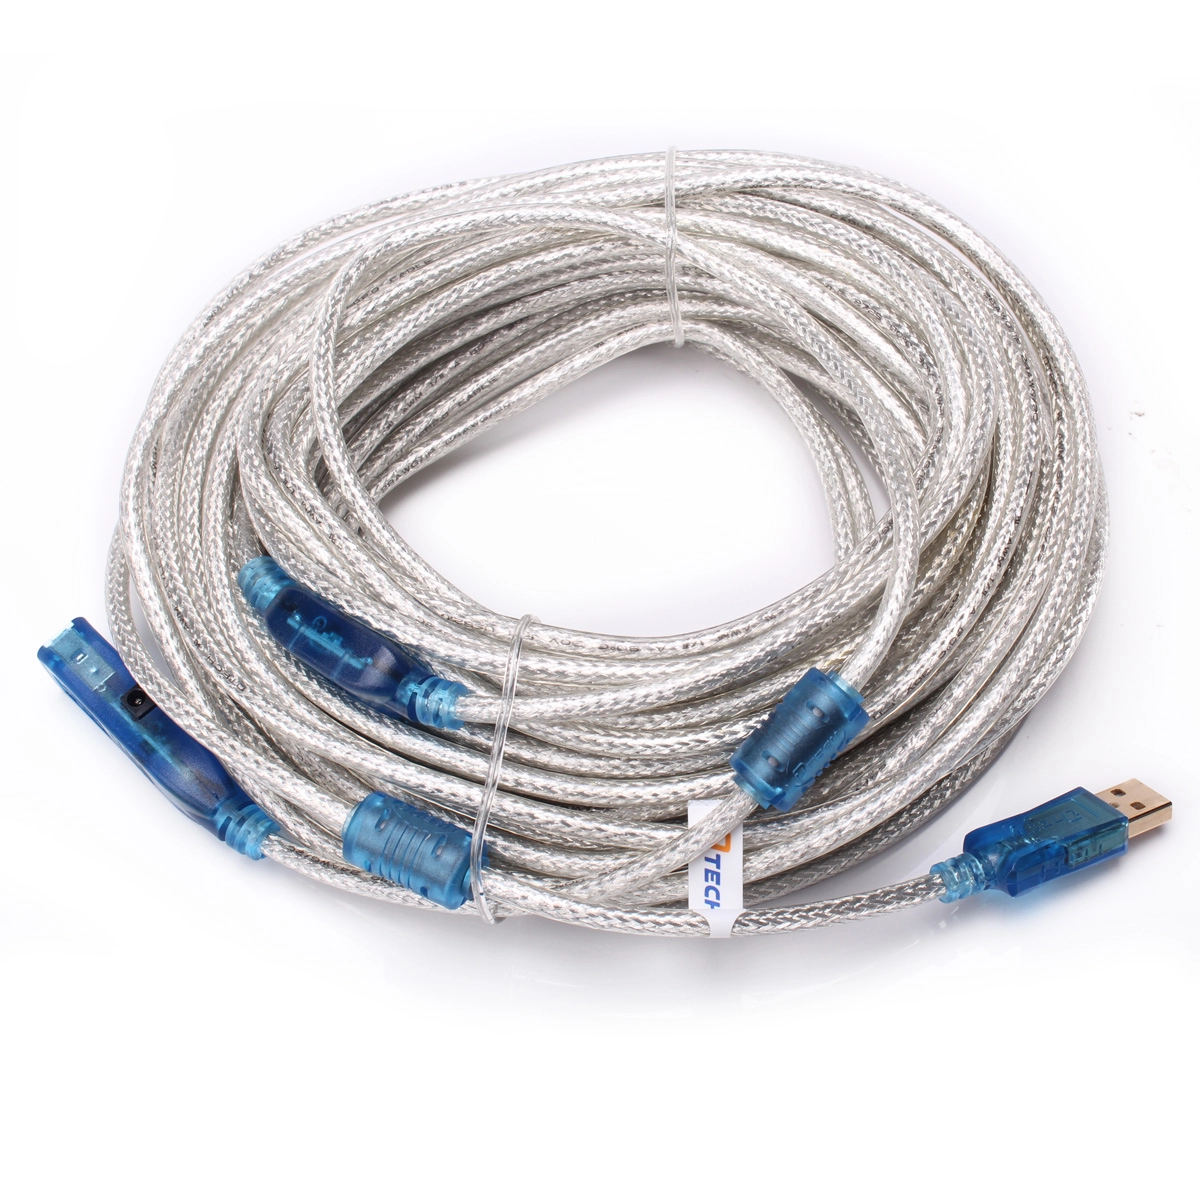 Kabel ekstensi DT-5028 USB 2.0 20M